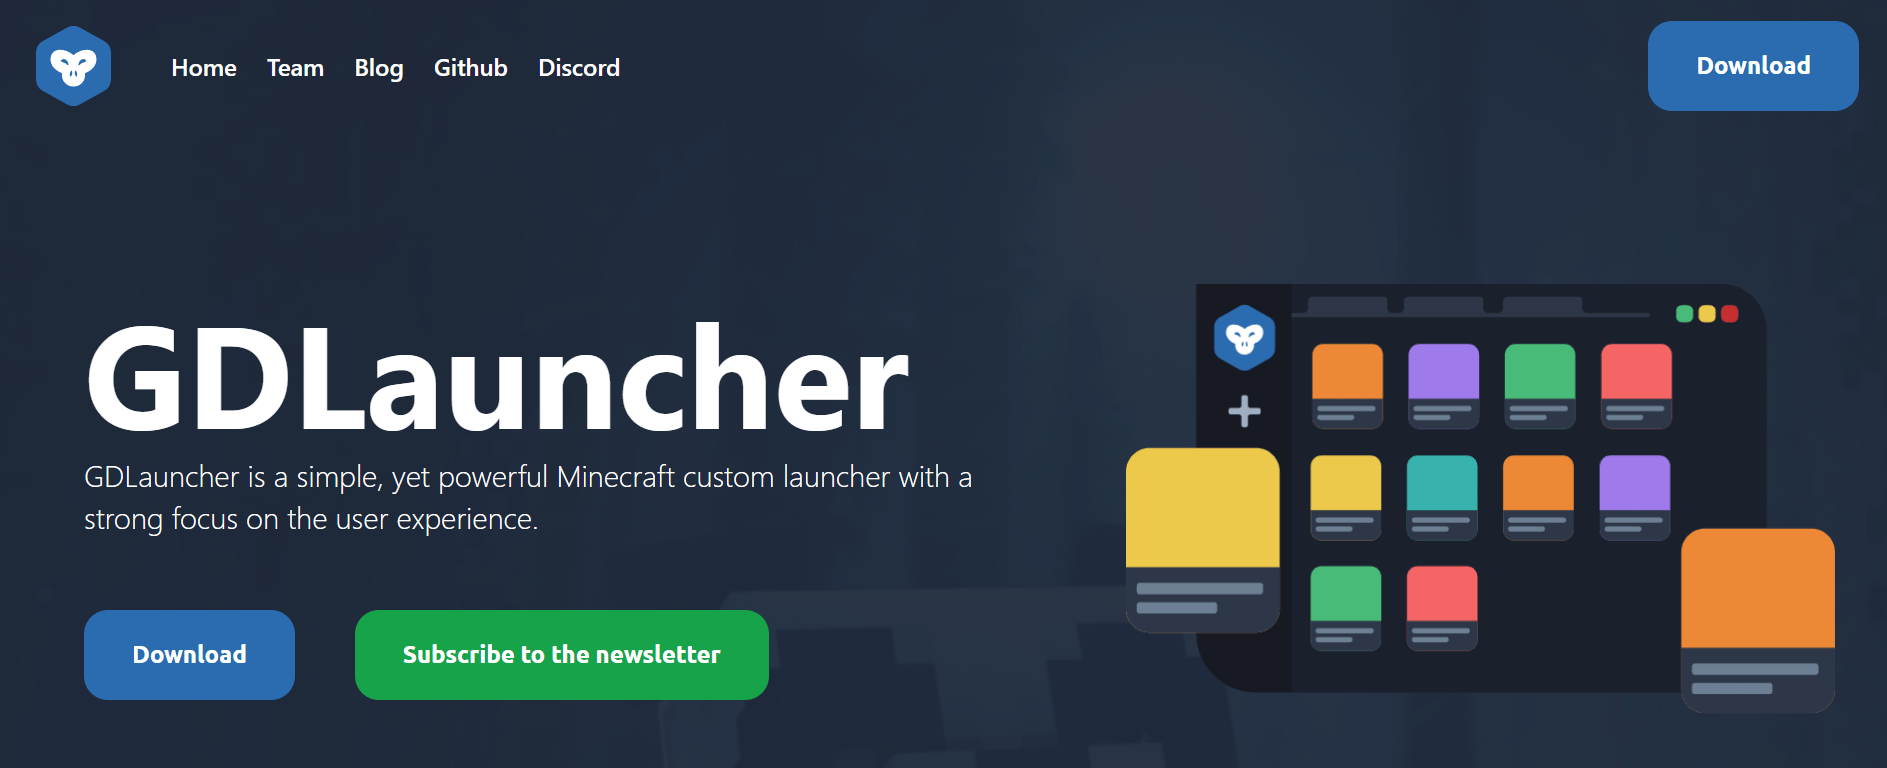 gdlauncher_website.png